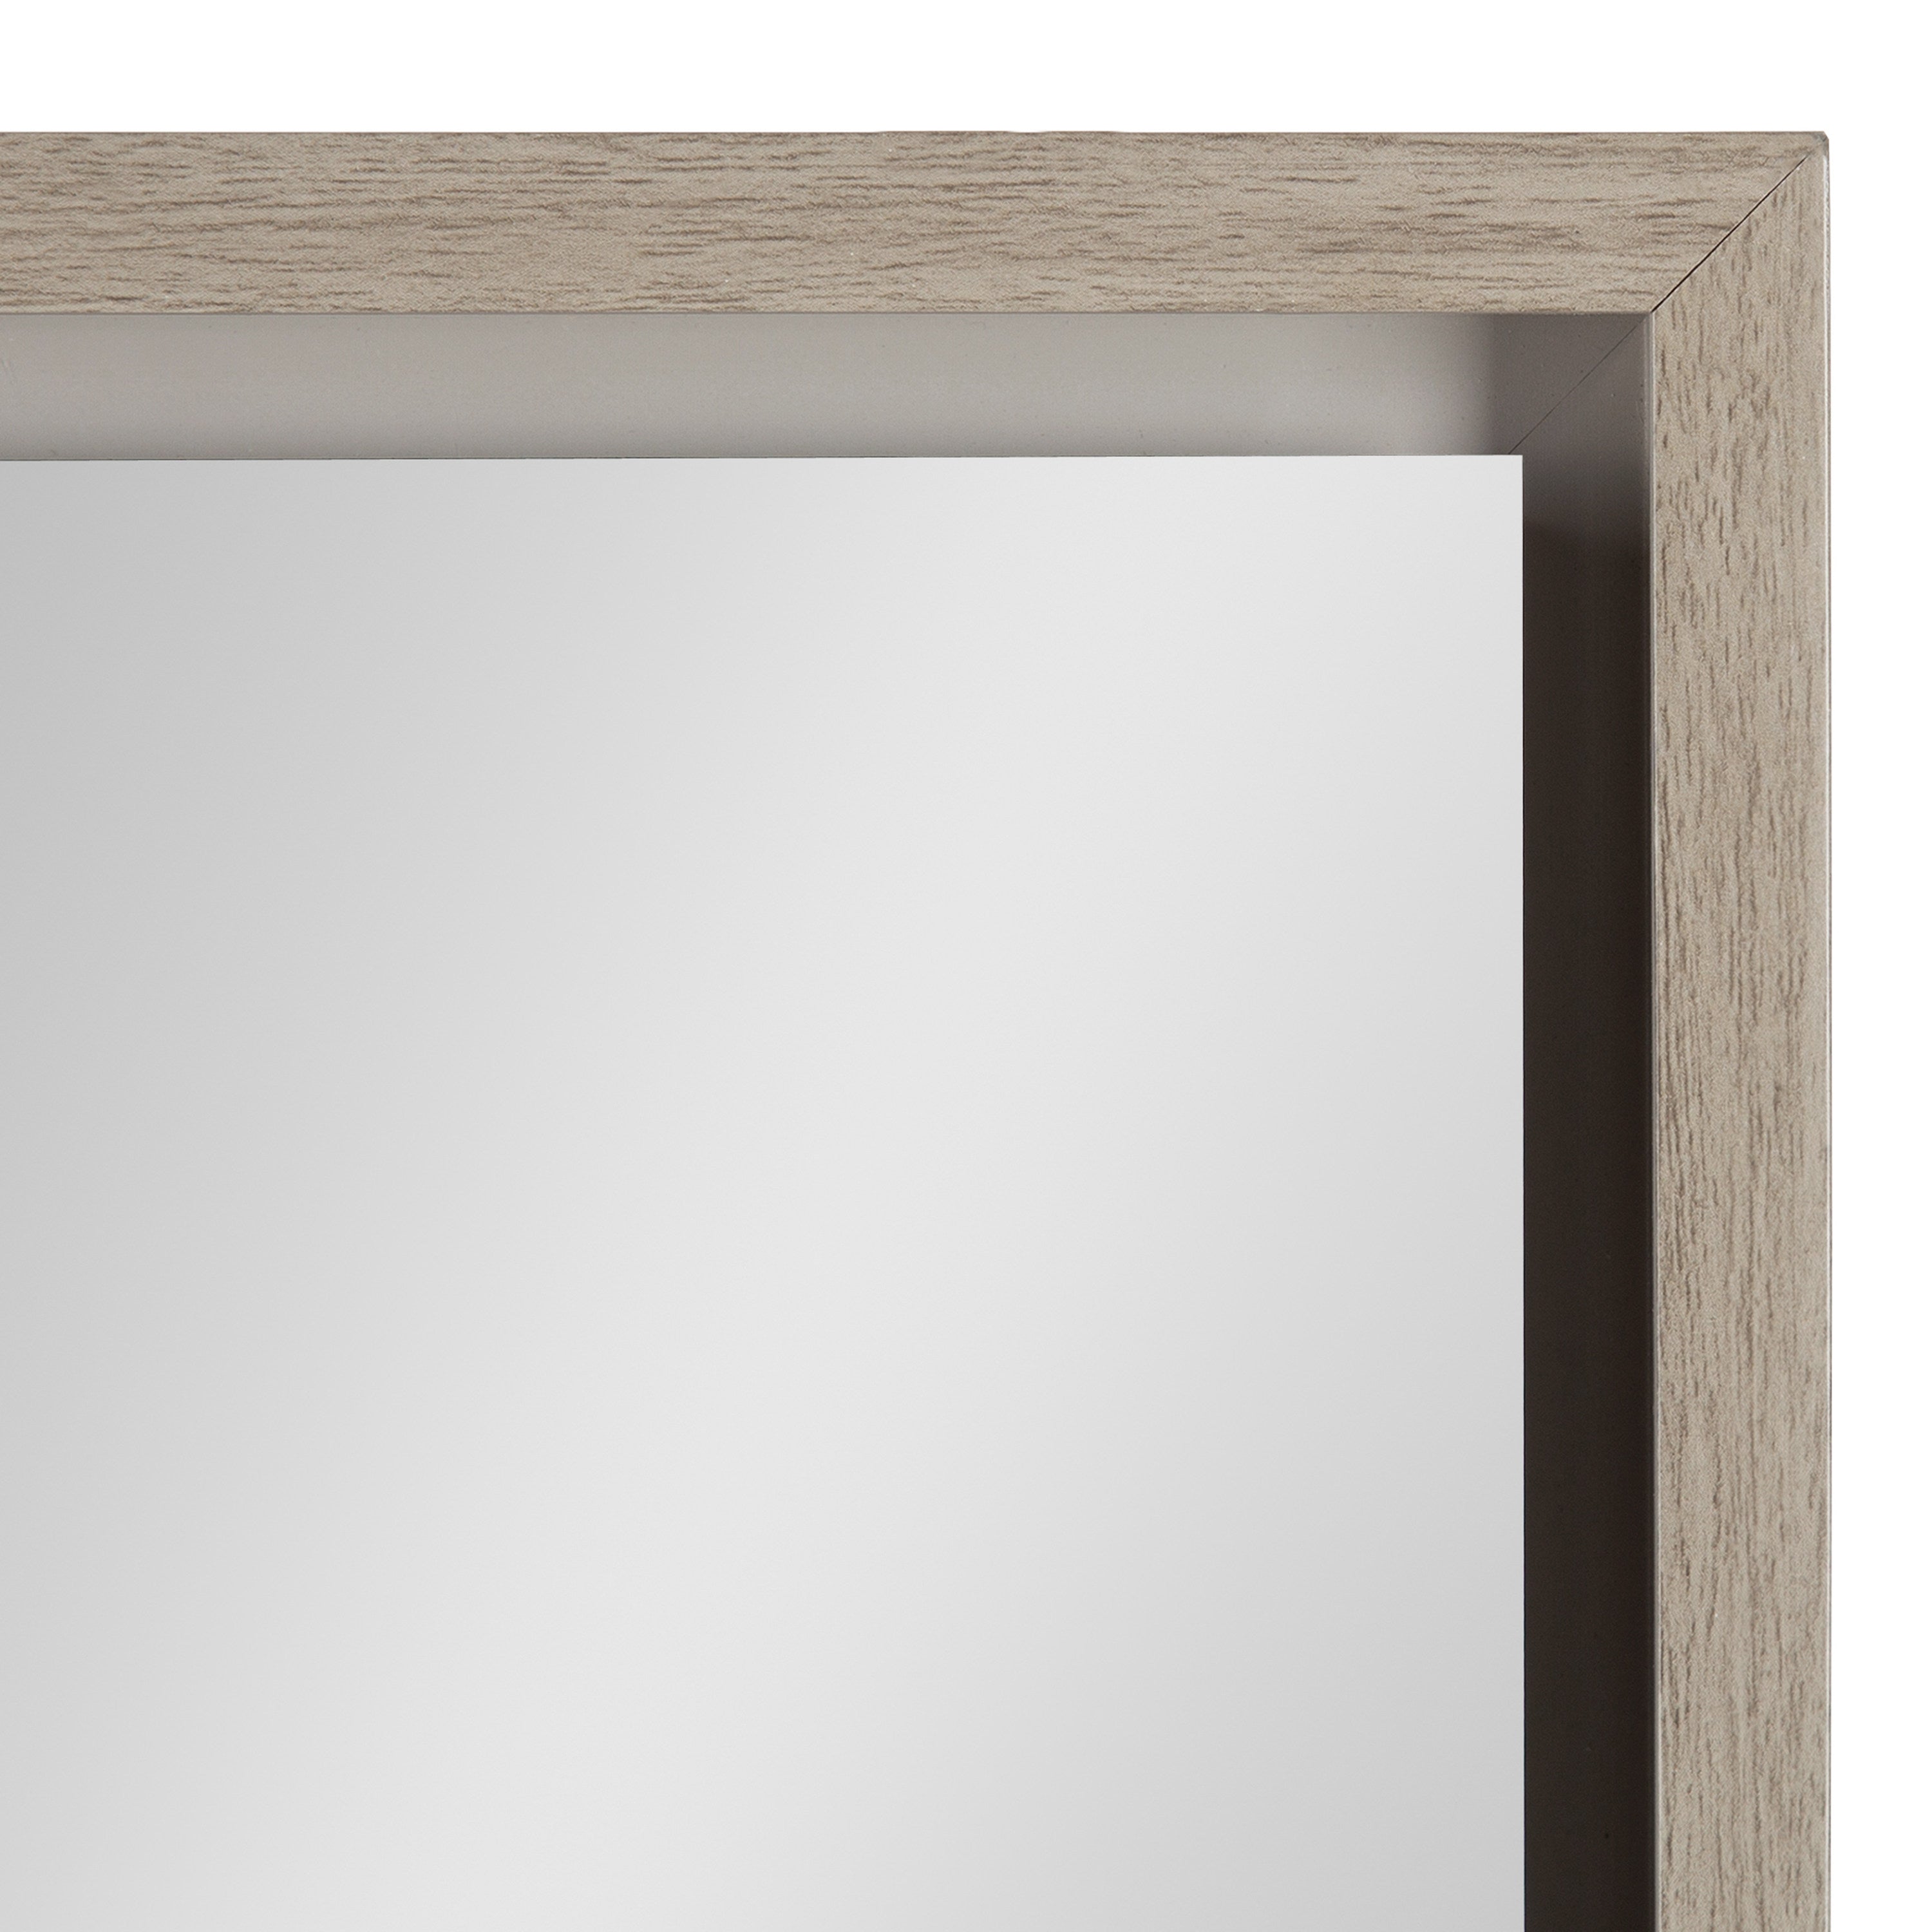 Evans Framed Wall Panel Mirror